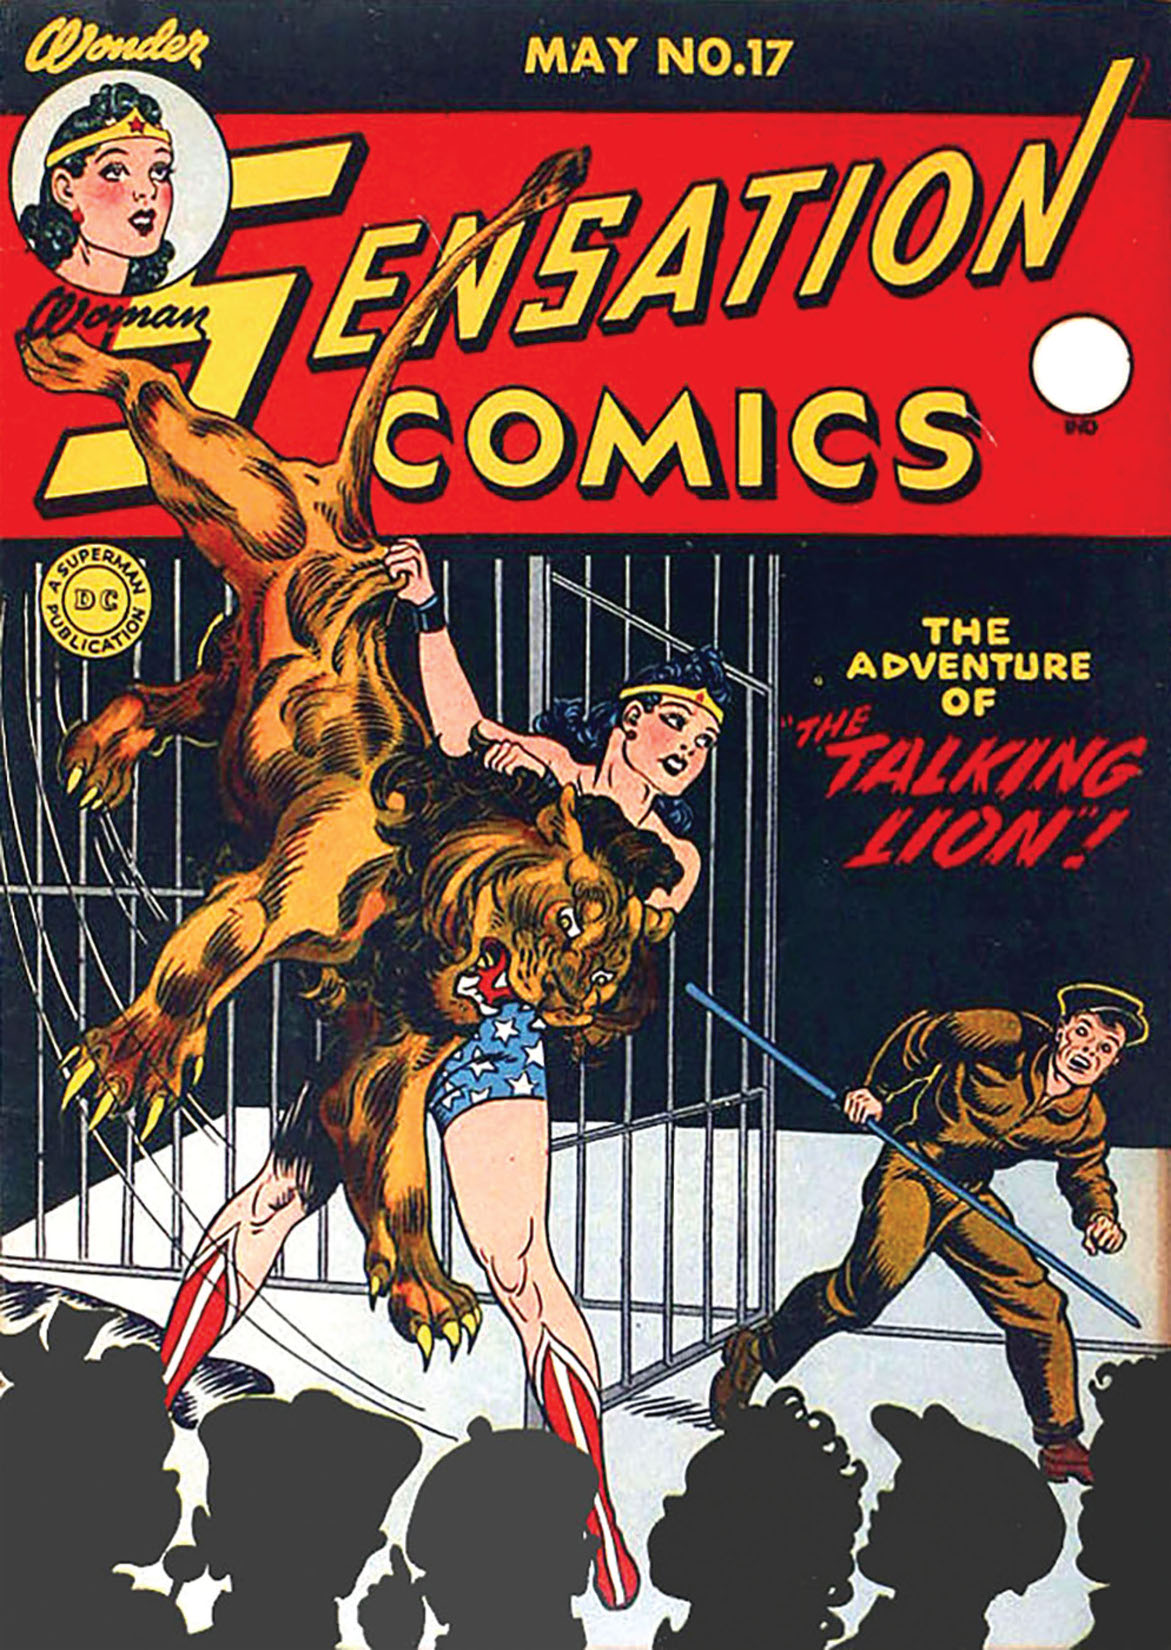 Sensation Comics #17 preview images